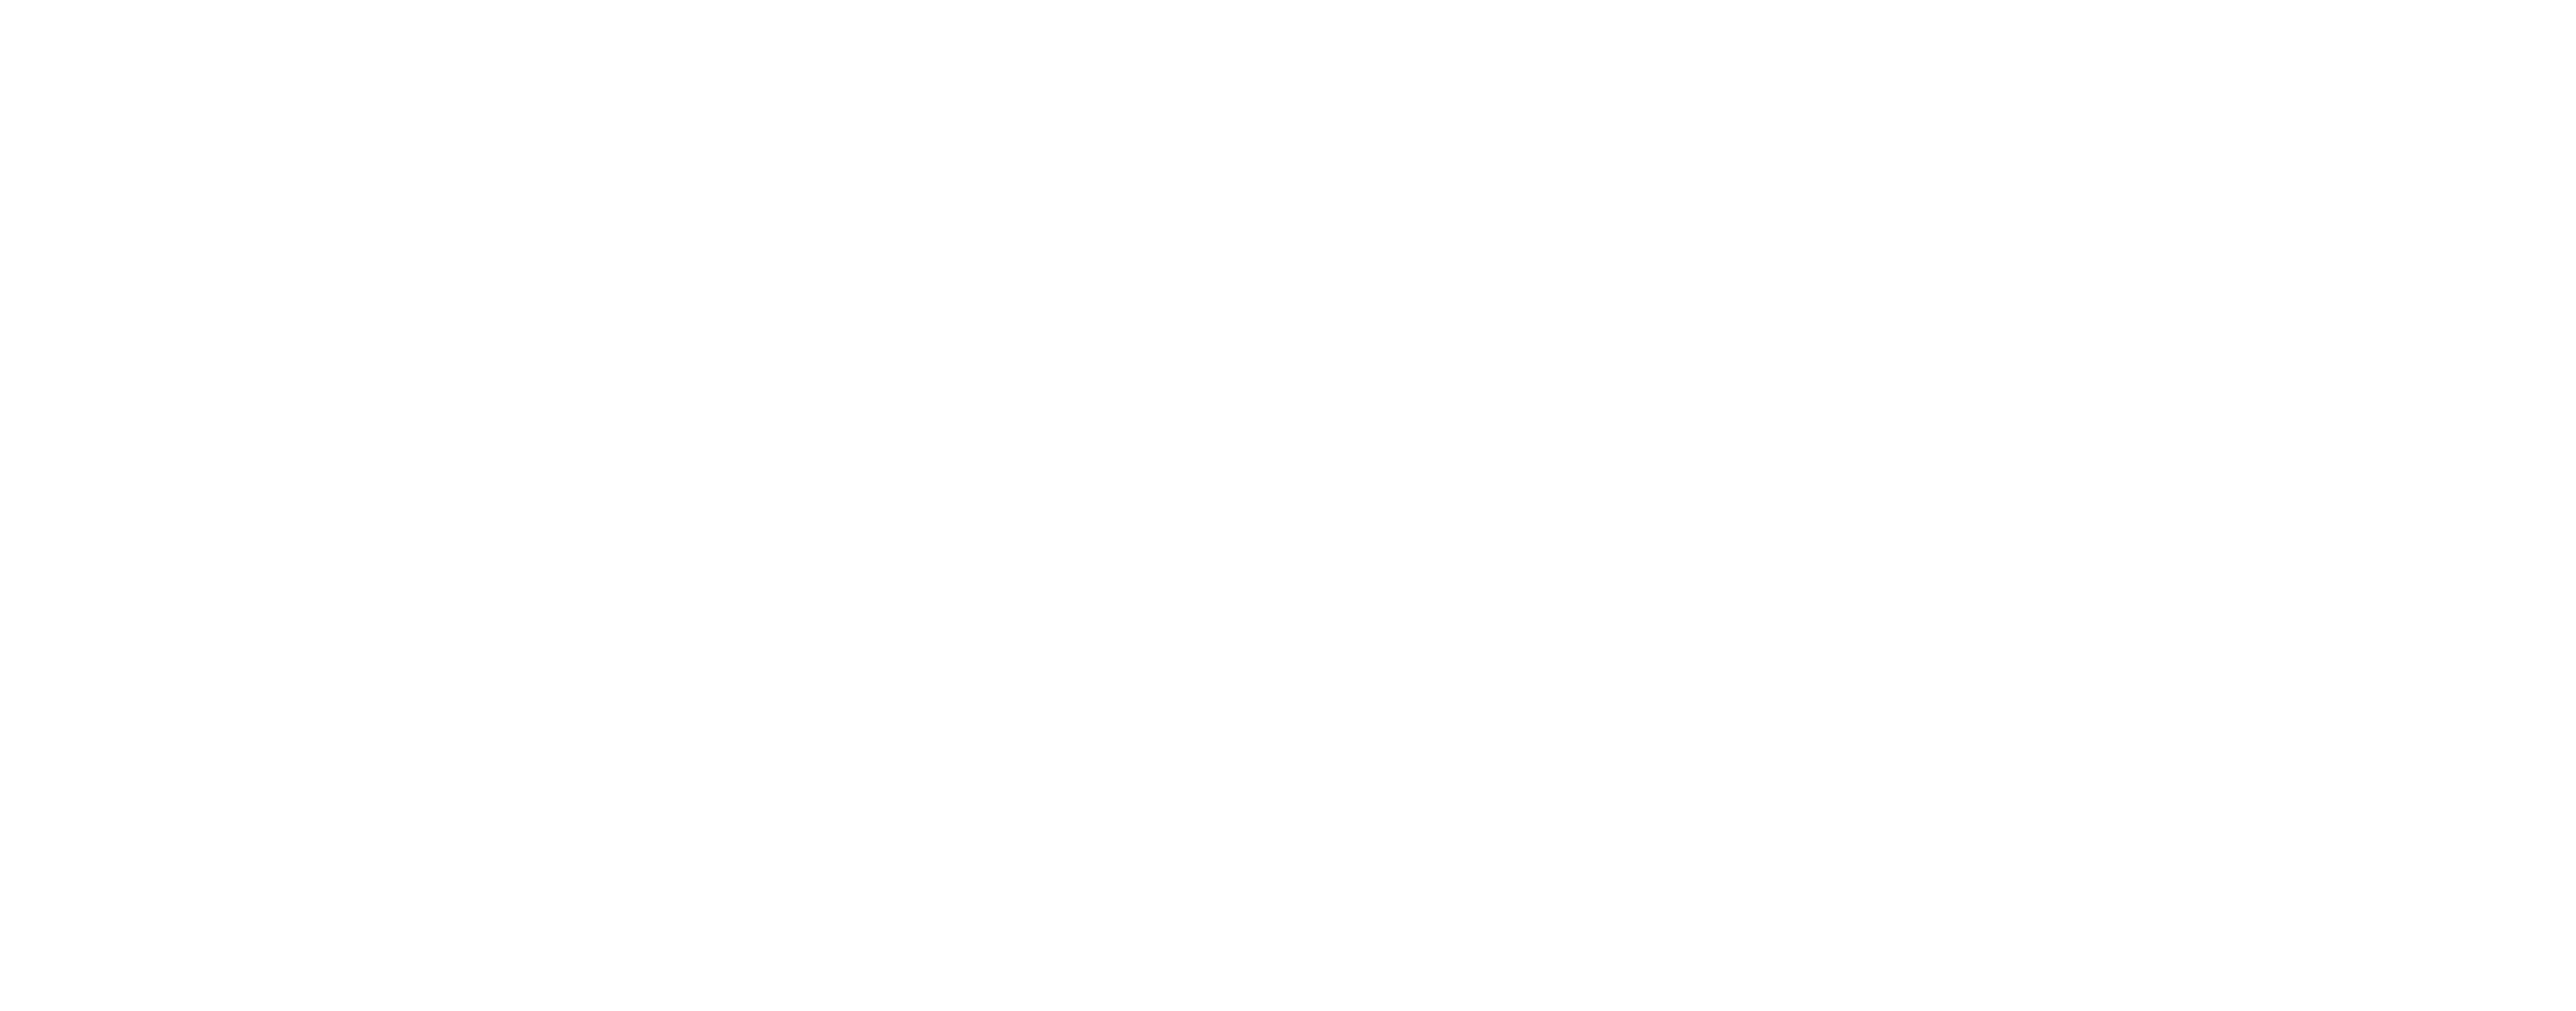 Logo Les Maisons Escapia Blanc